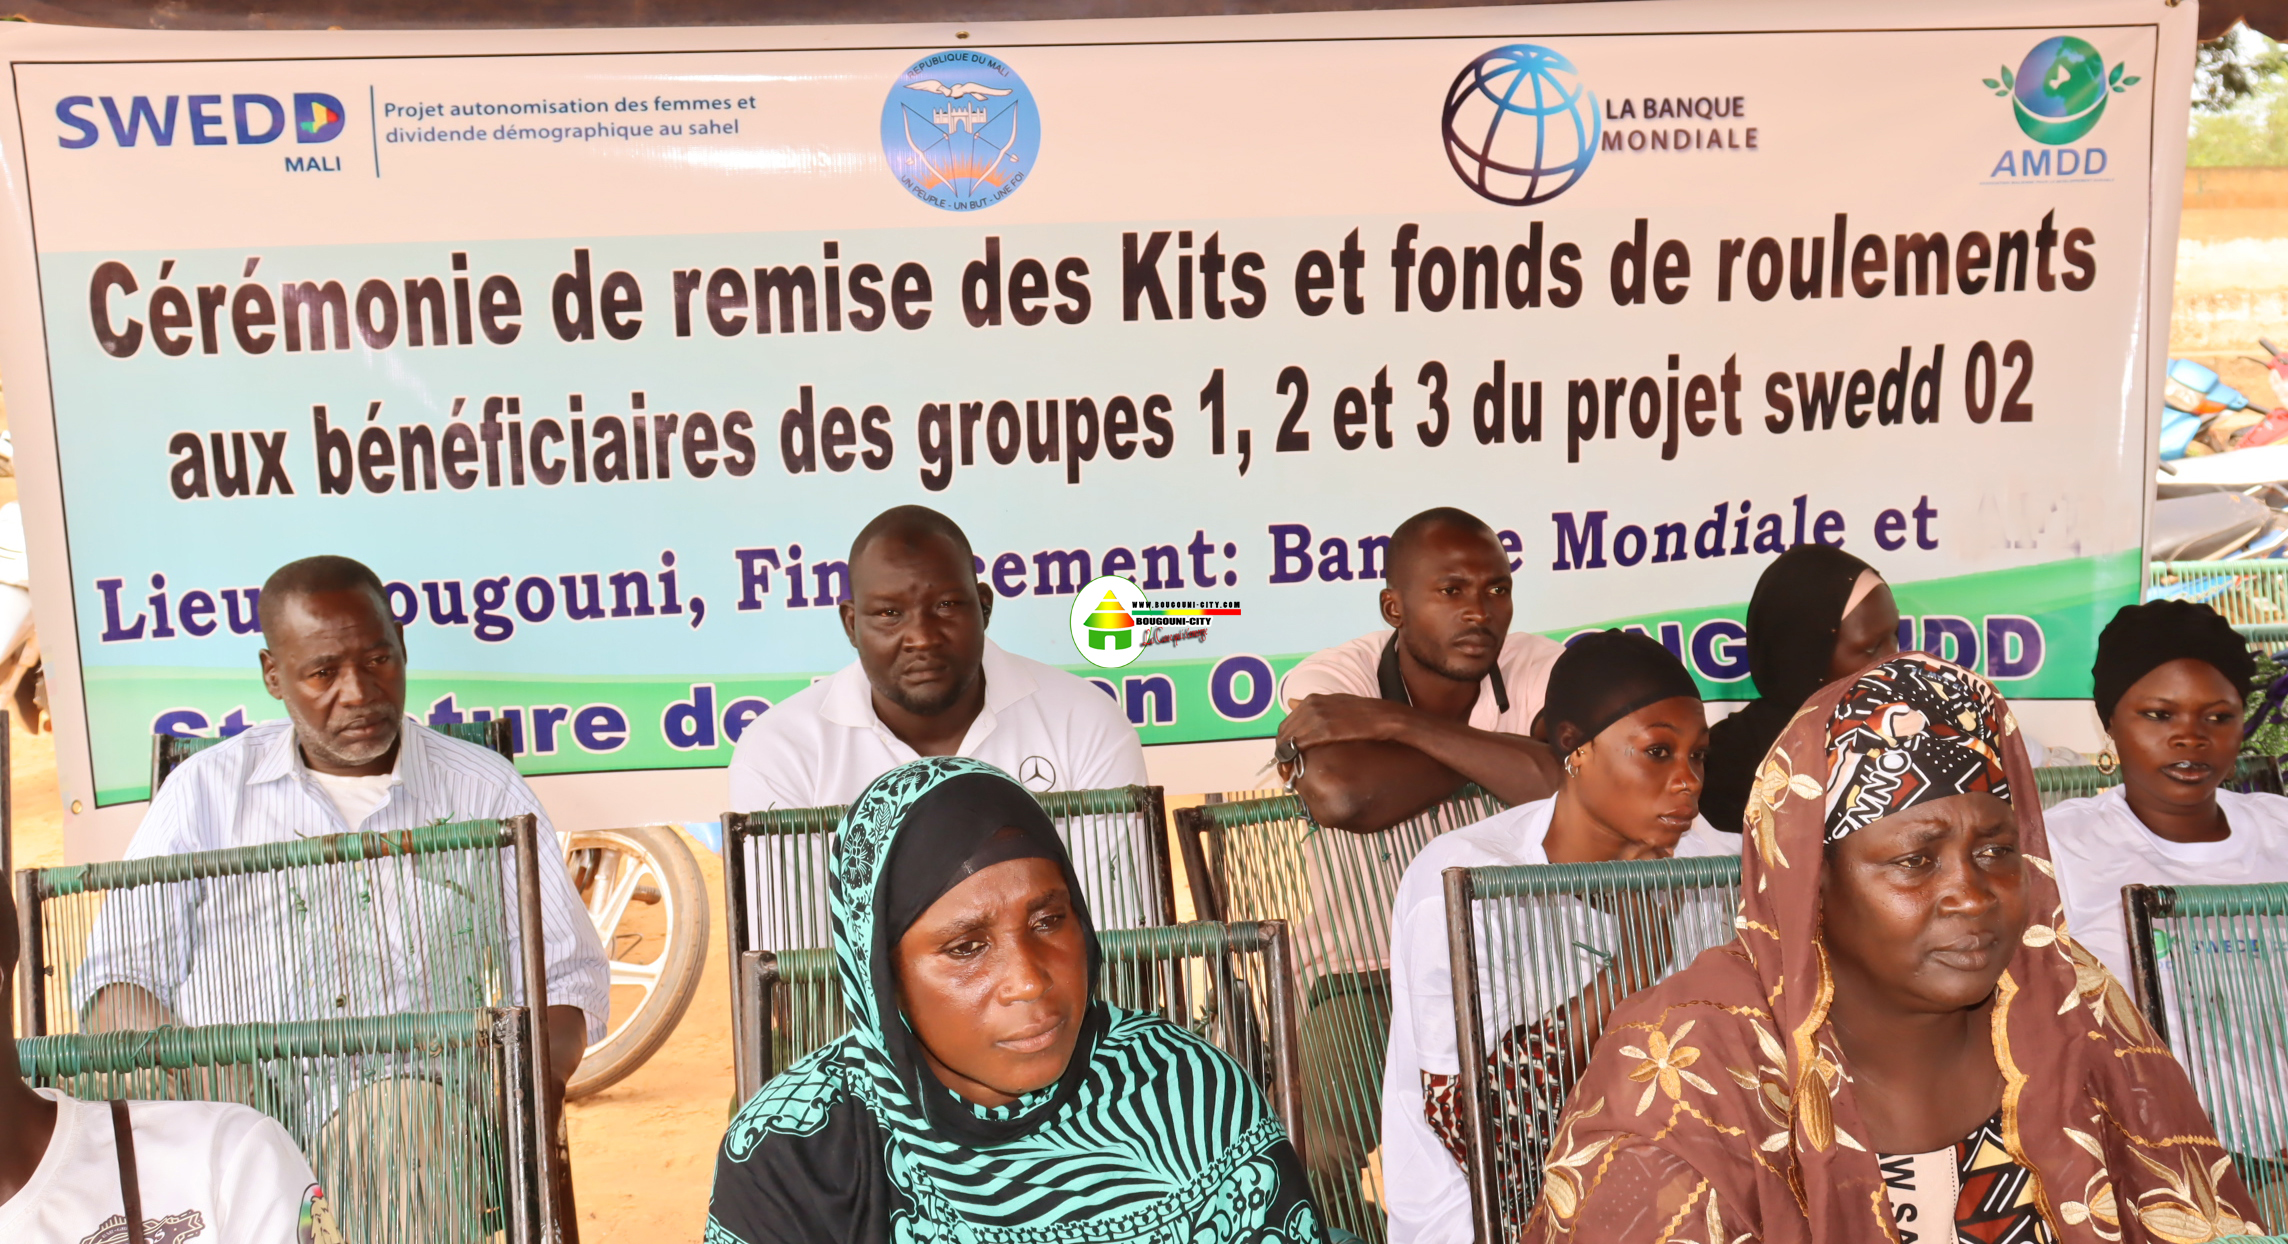 Cérémonie de remise des kits aux 22 filles/femmes bénéficiaires du projet SWEDD sous l'organisation l'ONG AMDD, dans les régions de Bougouni, Koutiala et la commune rurale de Sanso.